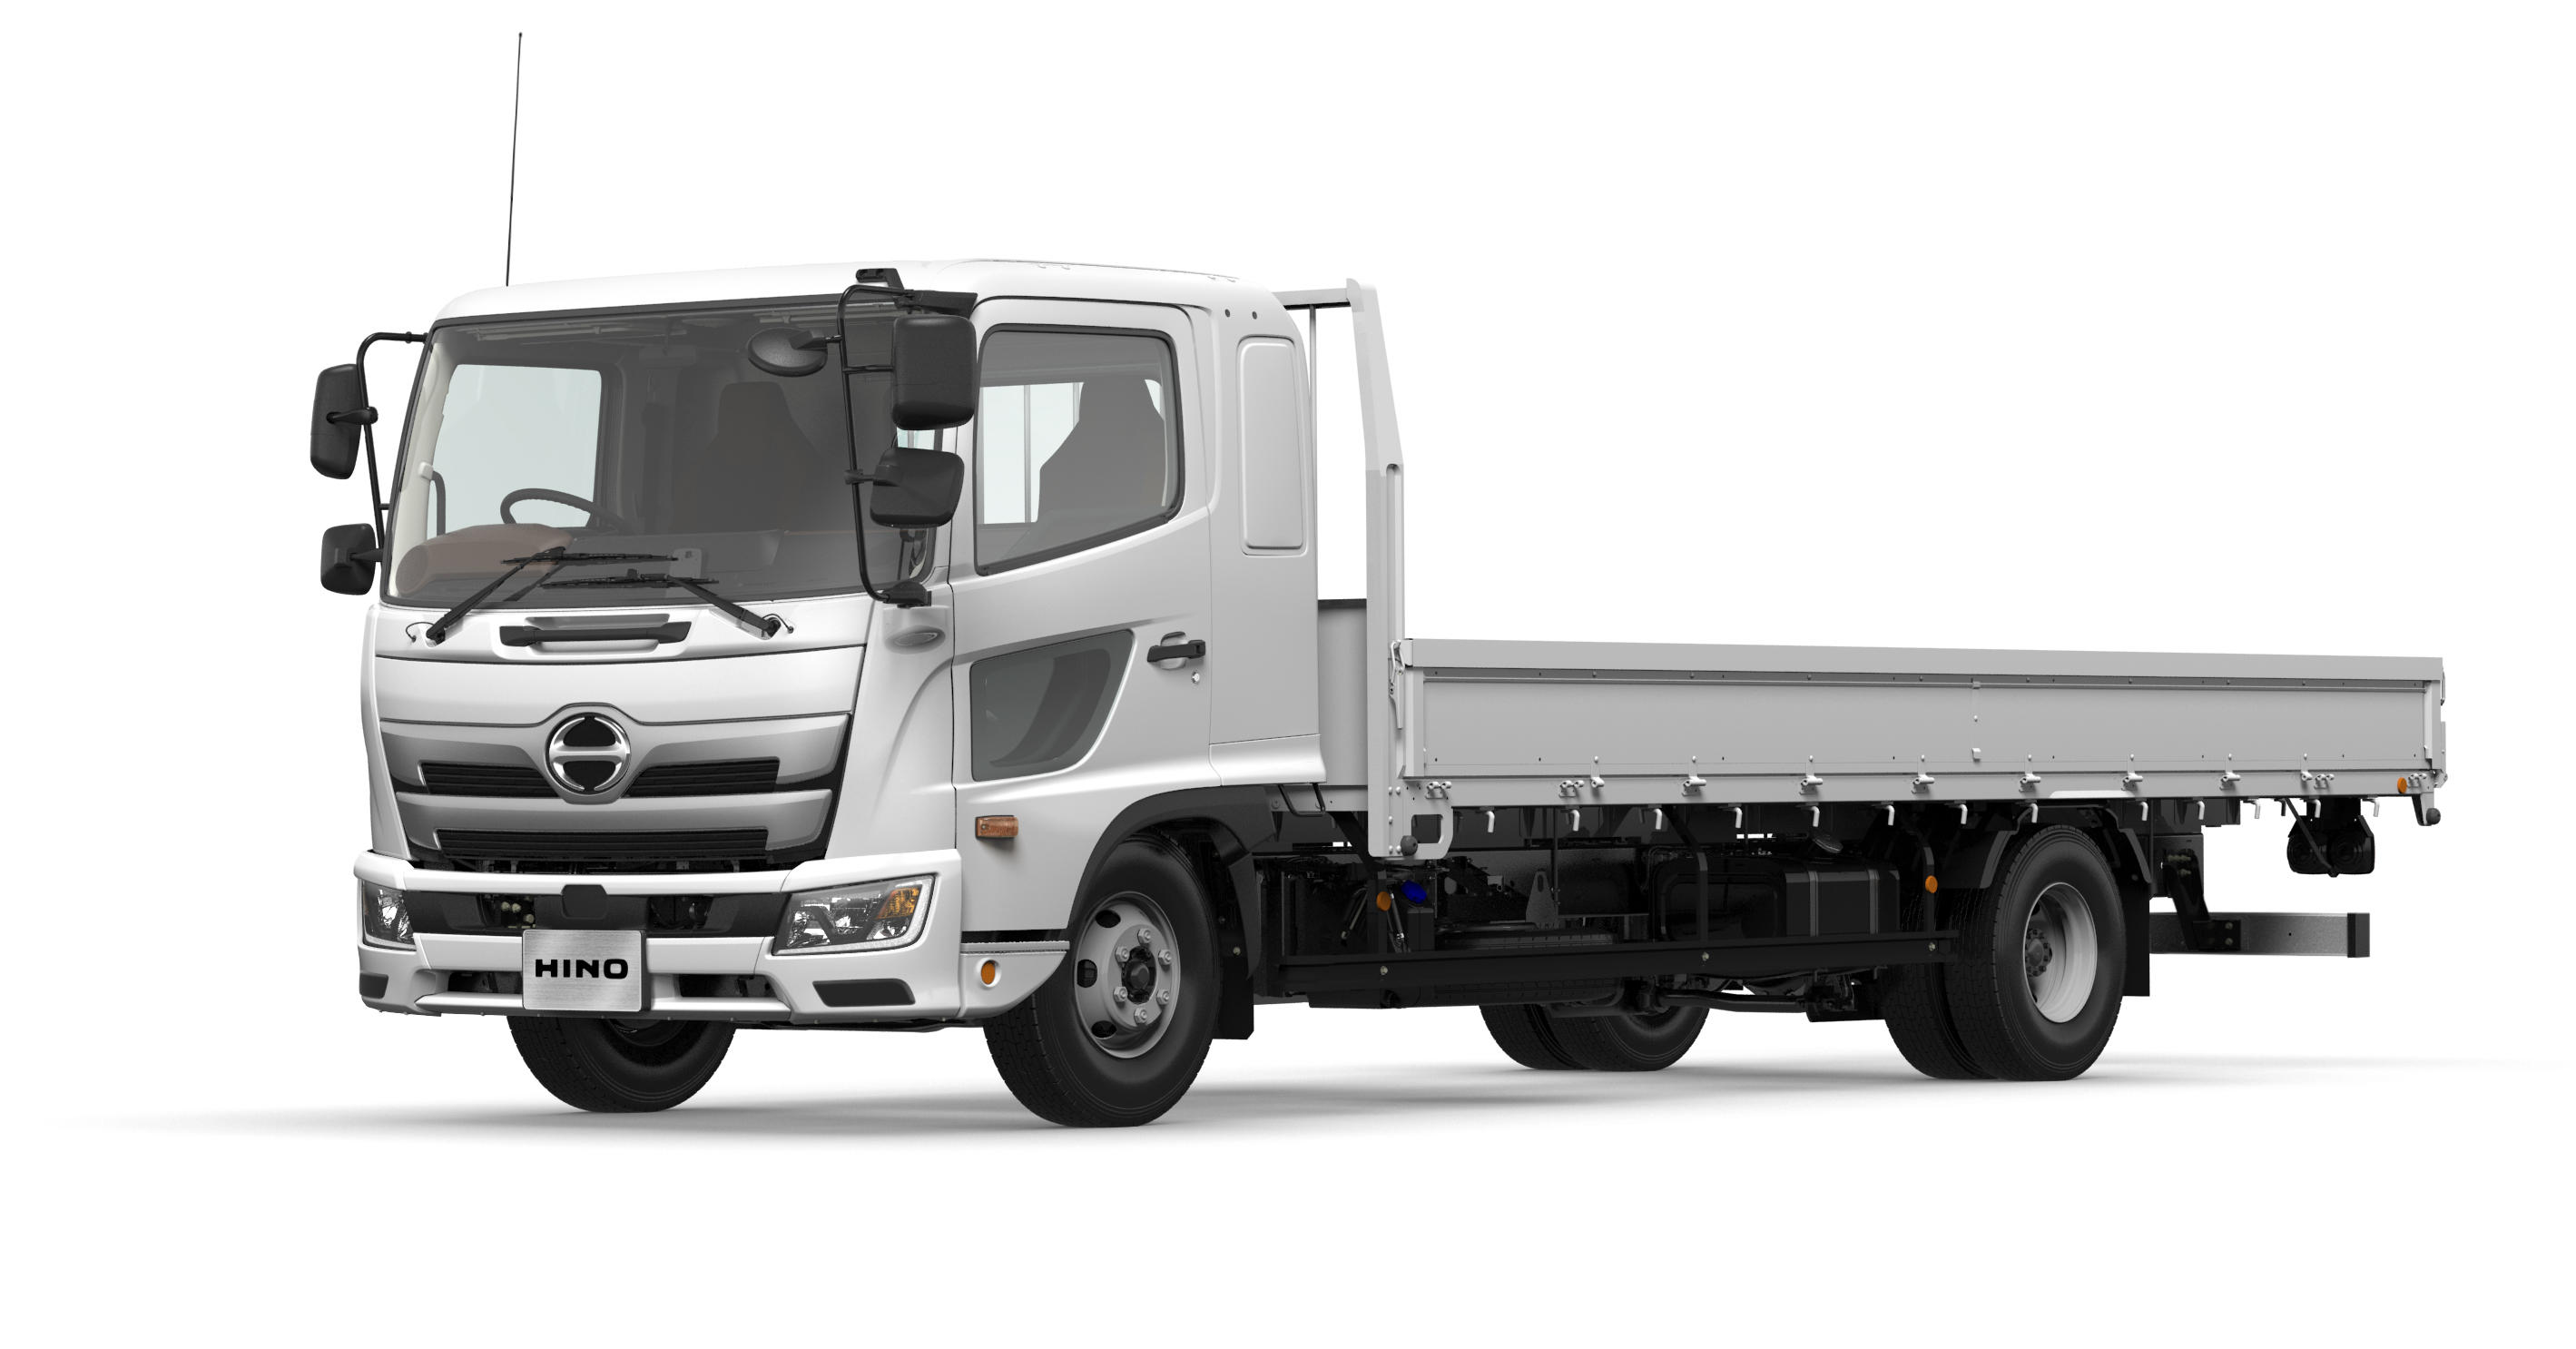 中型トラック「日野レンジャー」を改良して新発売【日野自動車】 | AEG 